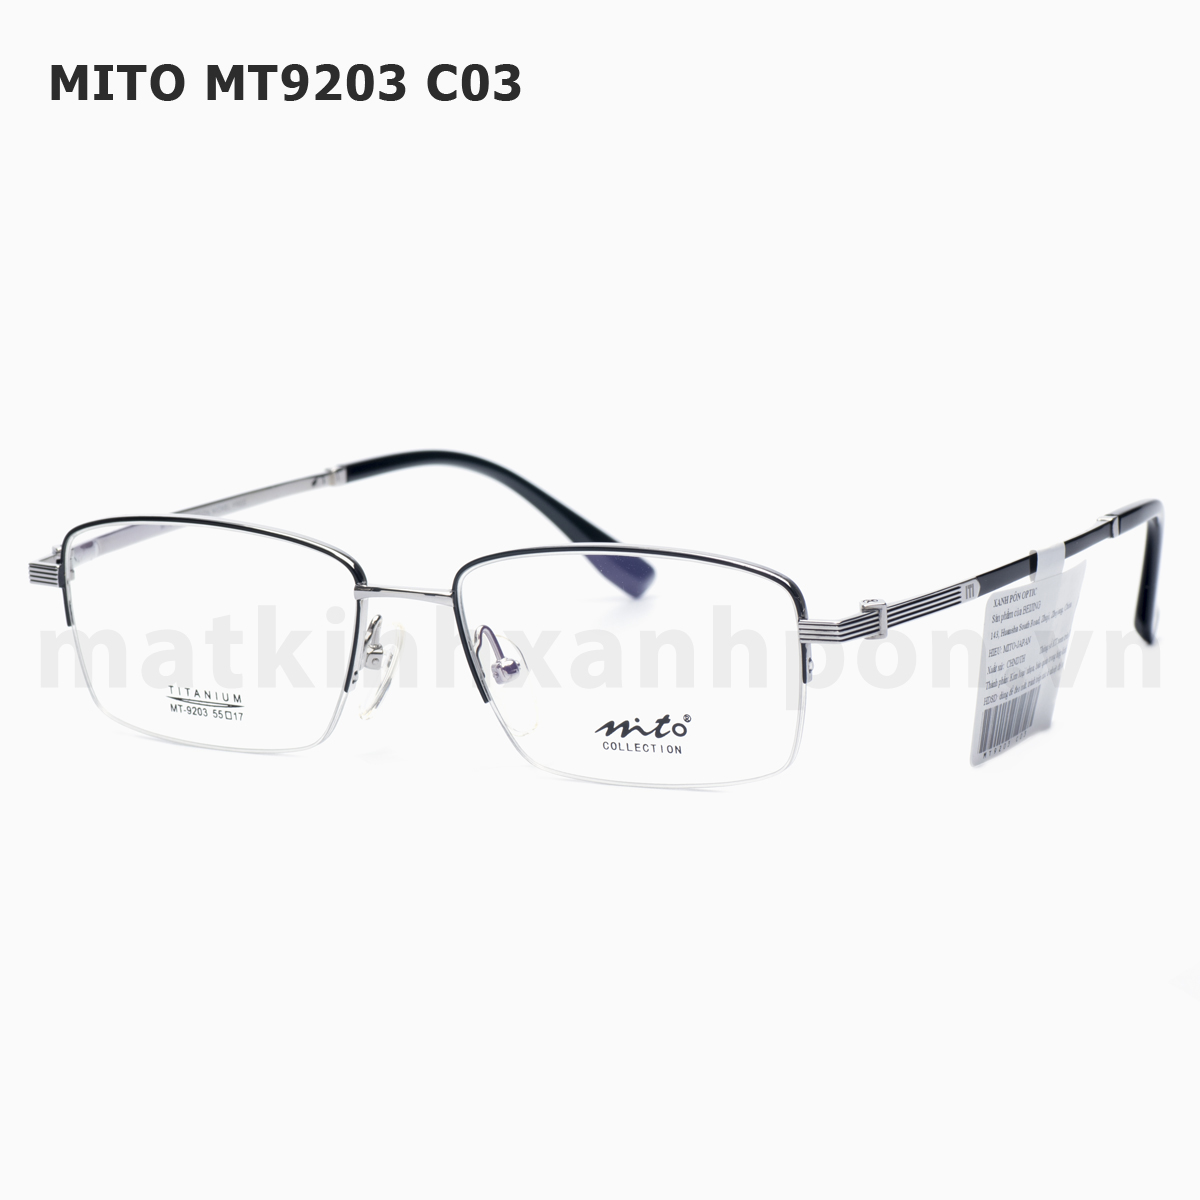 Mito MT9203 C03